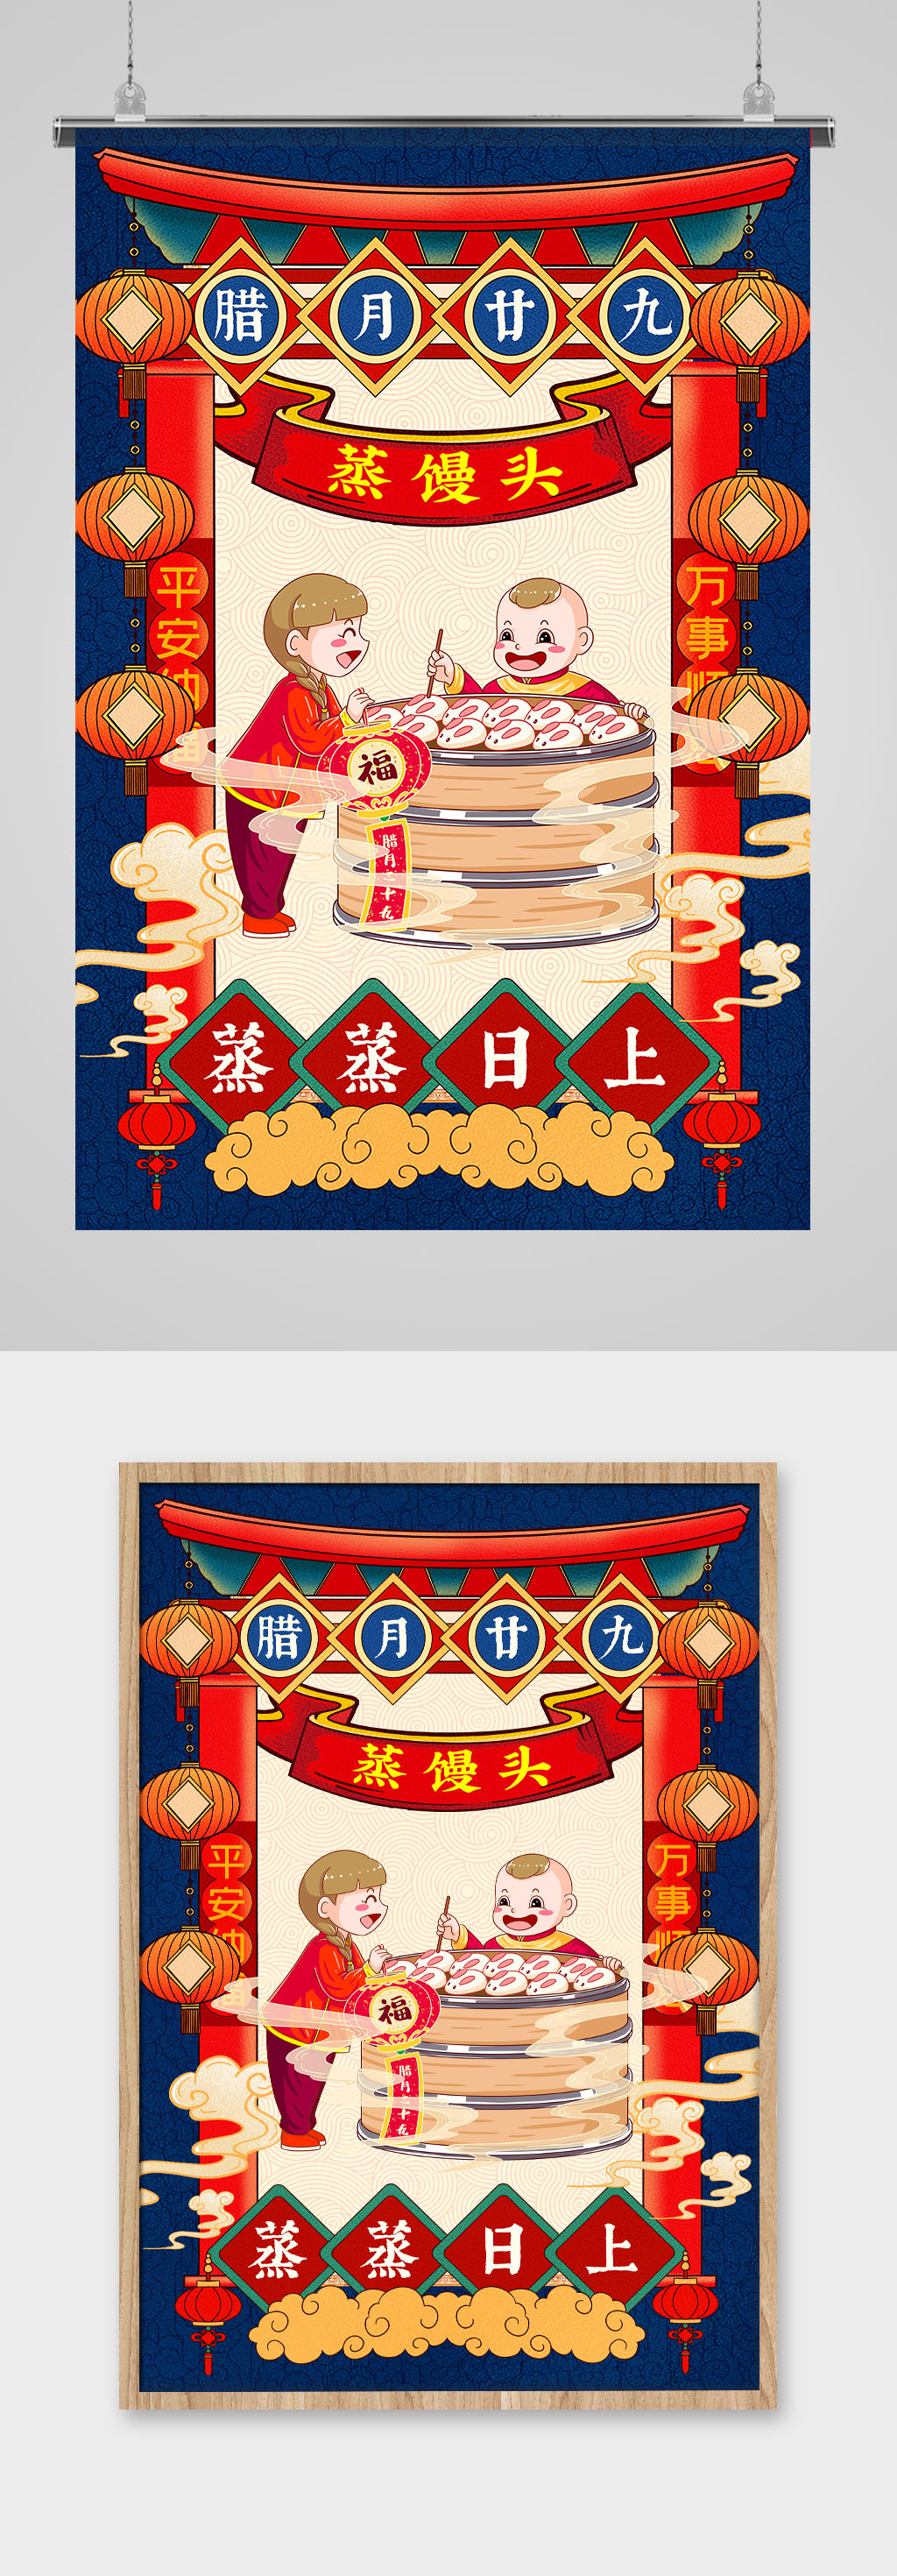 中国传统民俗插画风之蒸馒头海报